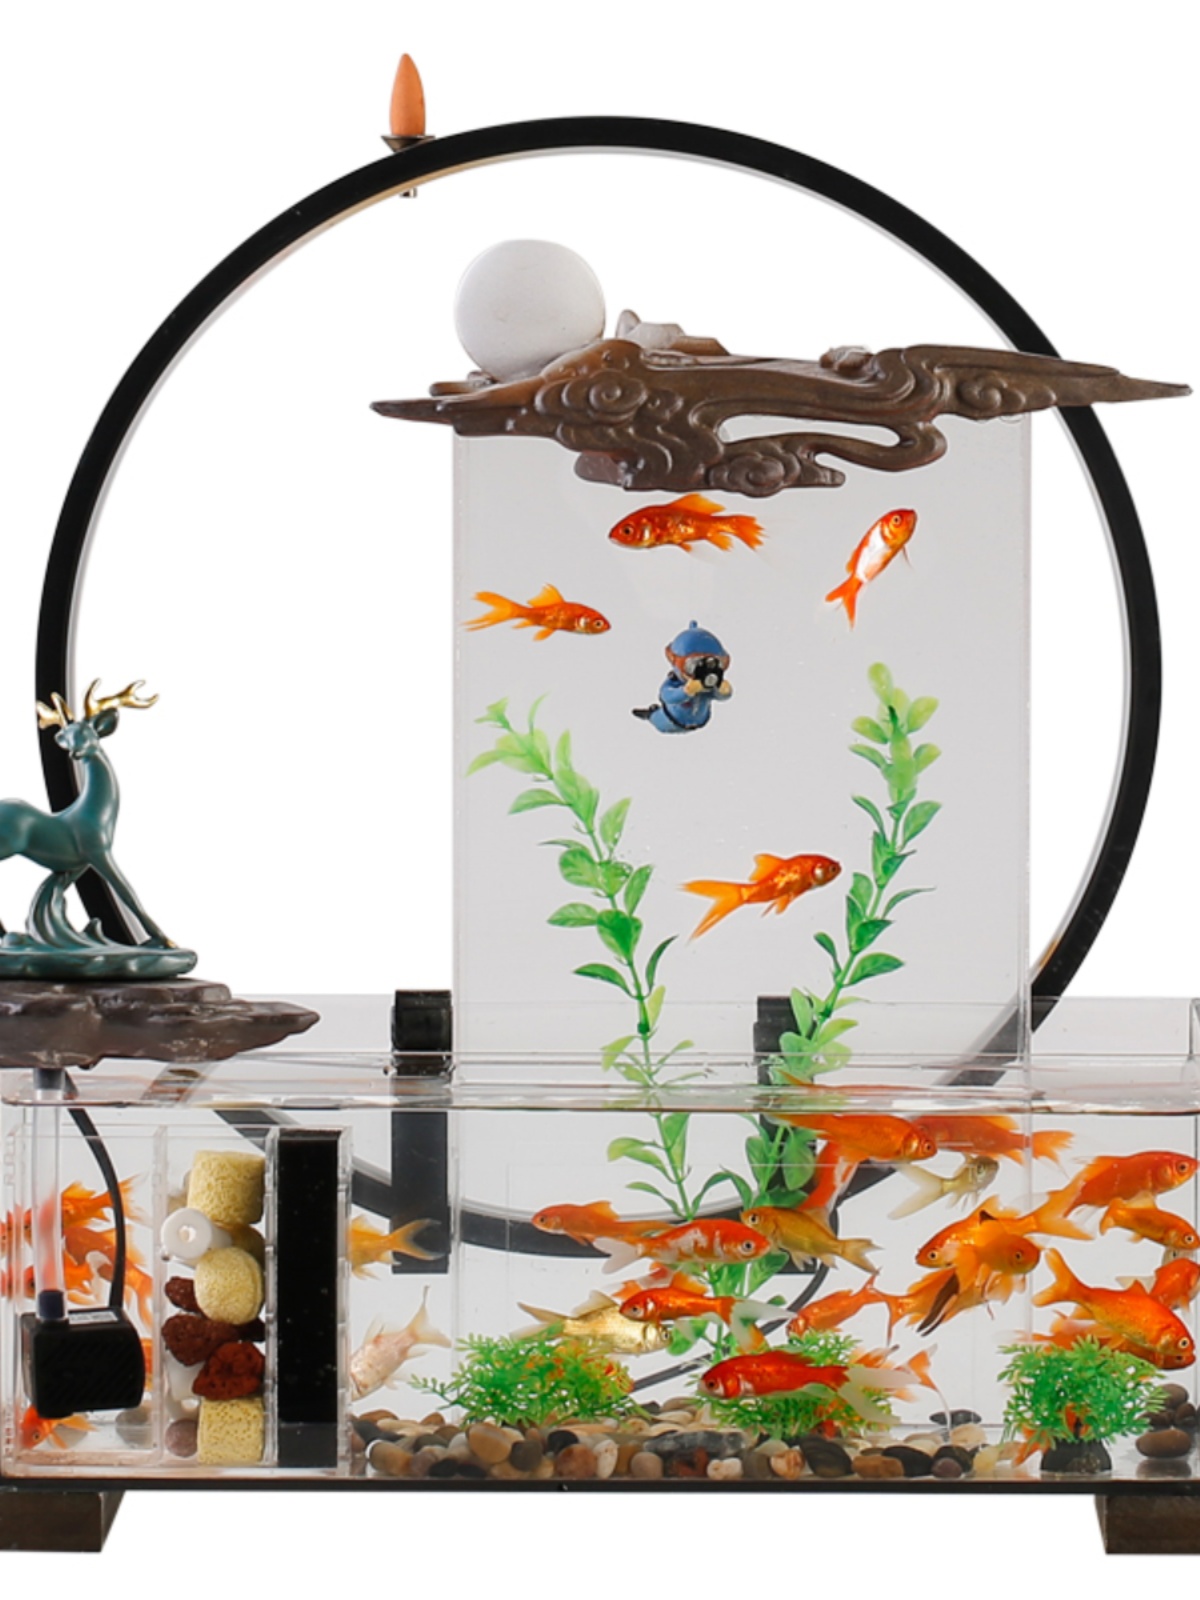 客厅小型透明玻璃鱼缸摆件家用桌面自循环流水生财喷泉造景装饰品